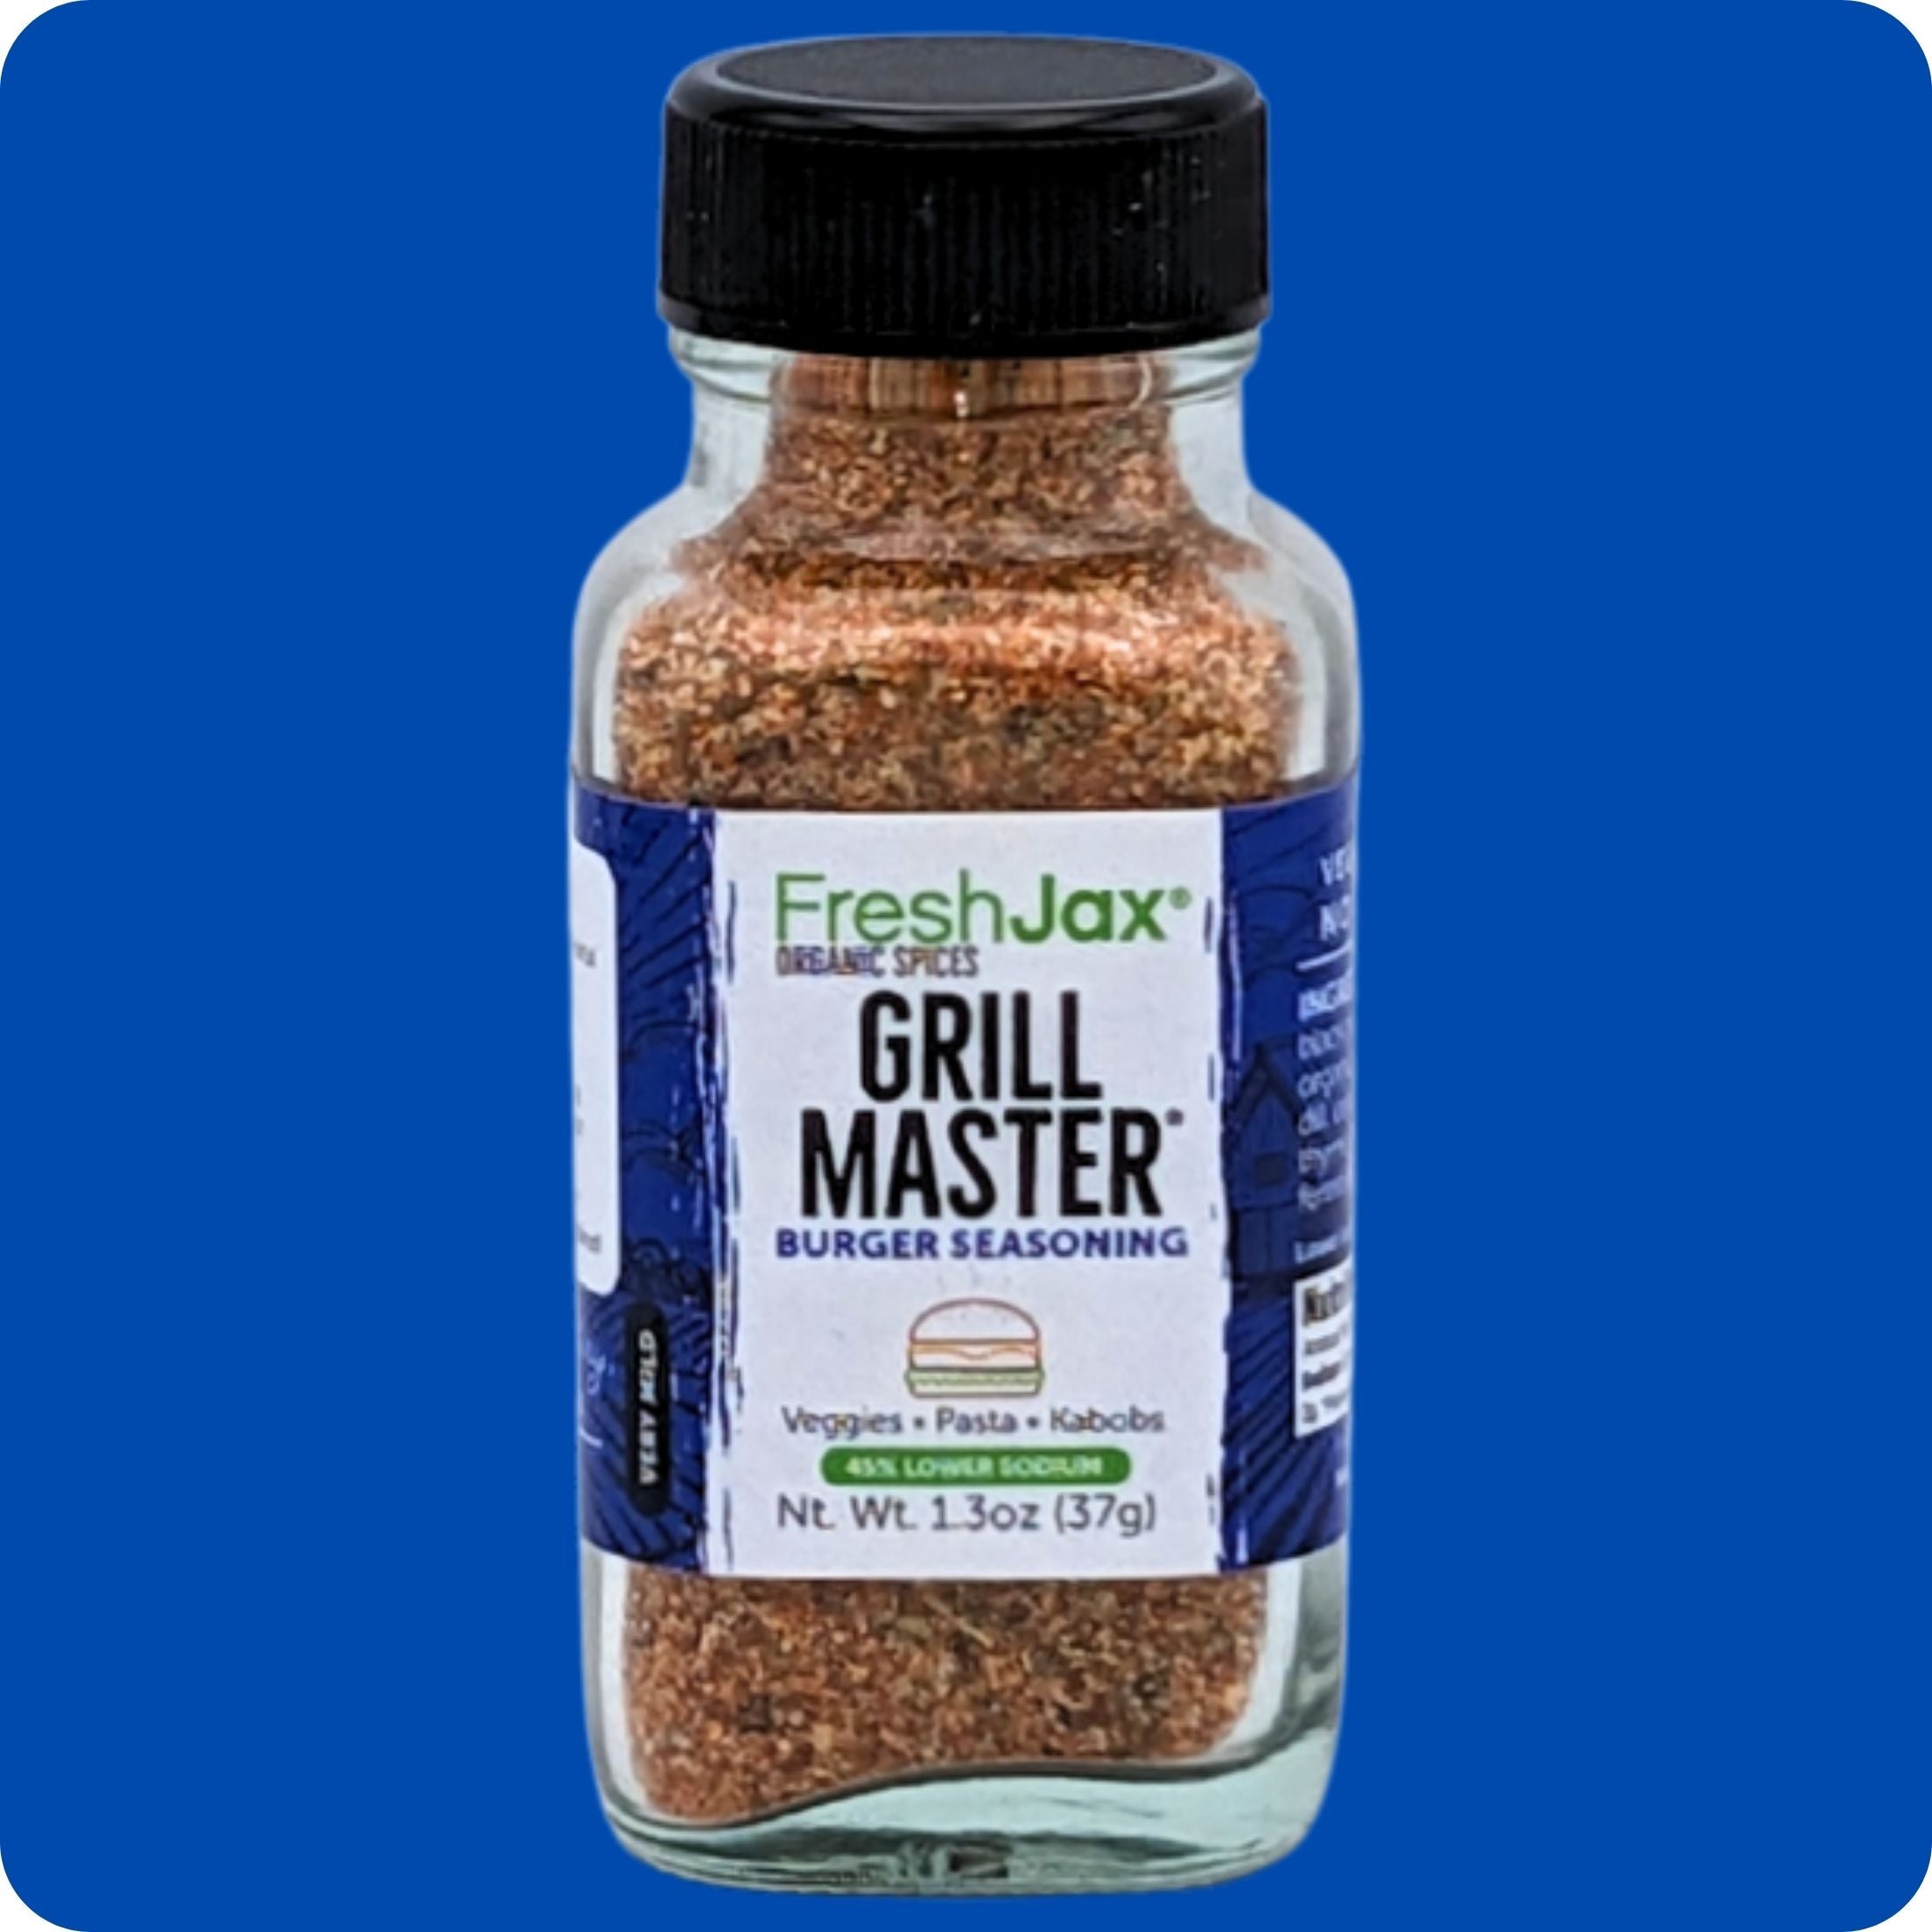 Grill Master Burger Seasoning Sampler